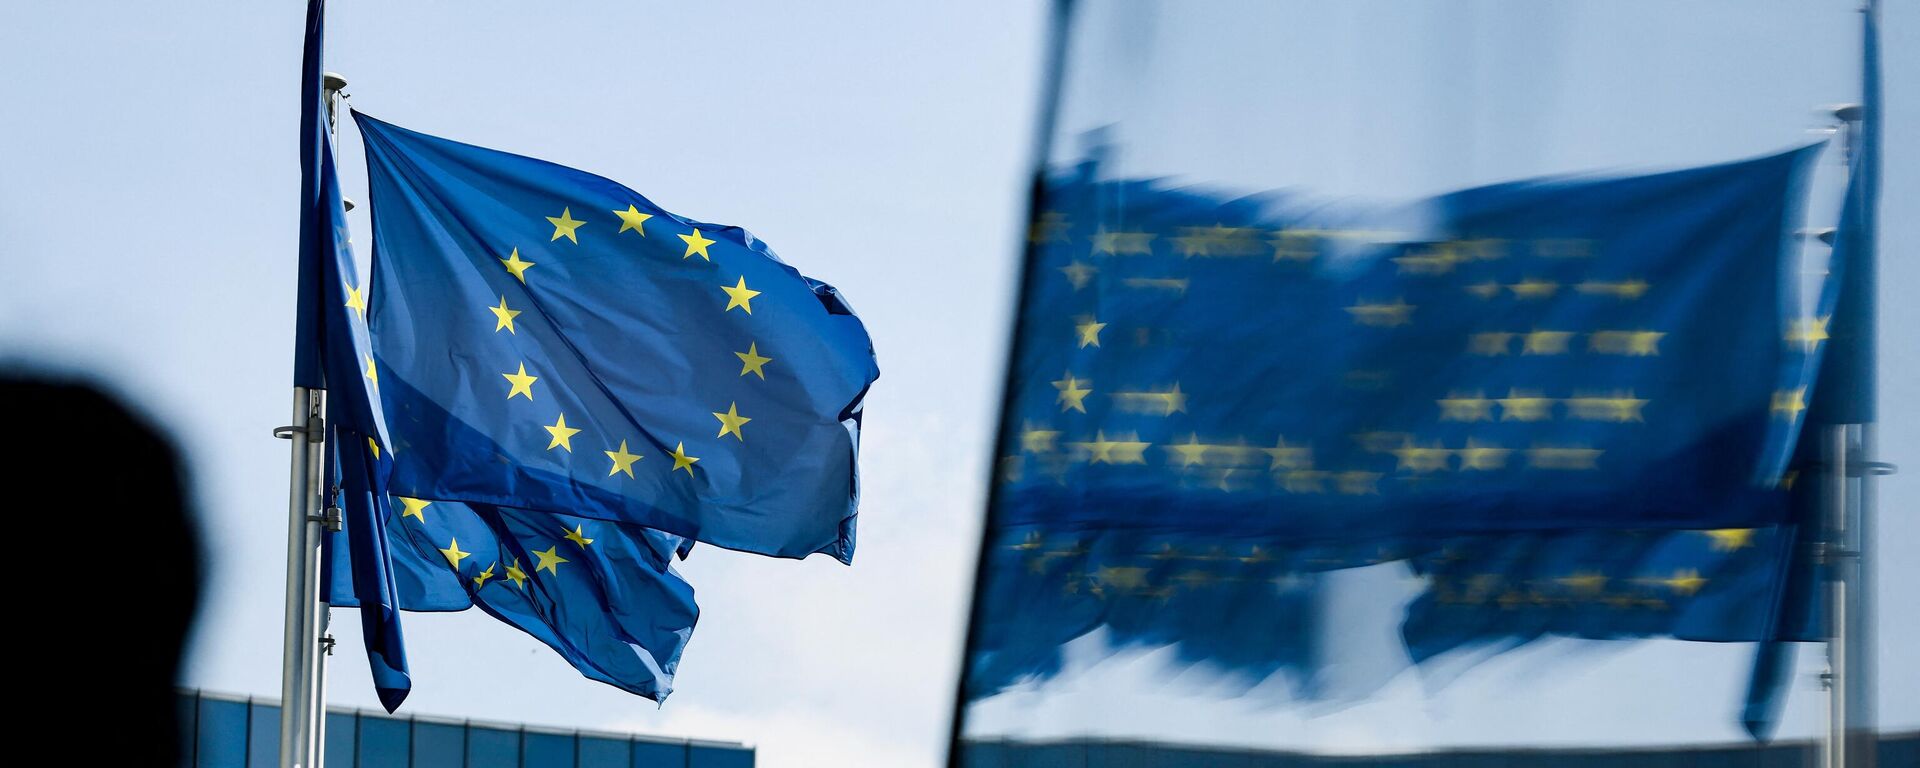 Заставе Европске уније испред зграде седишта ЕУ у Бриселу - Sputnik Србија, 1920, 05.12.2021